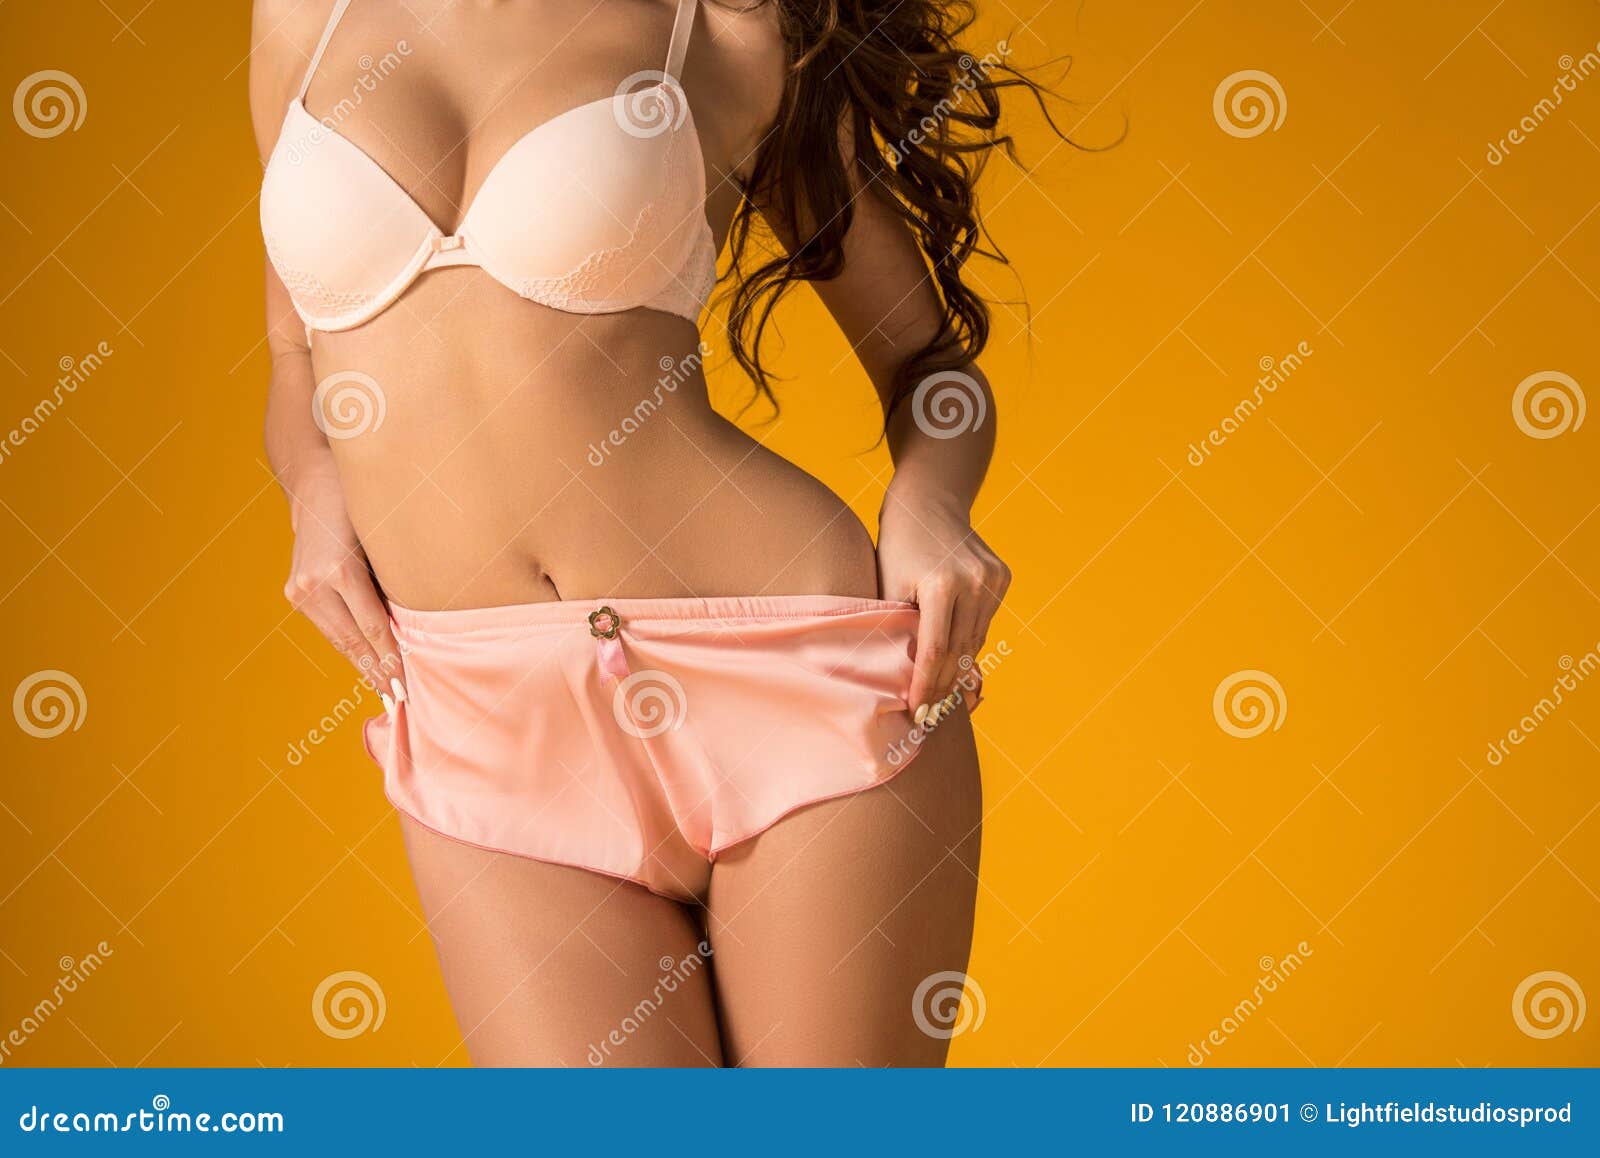 carter sparks share girls taking off their underwear photos